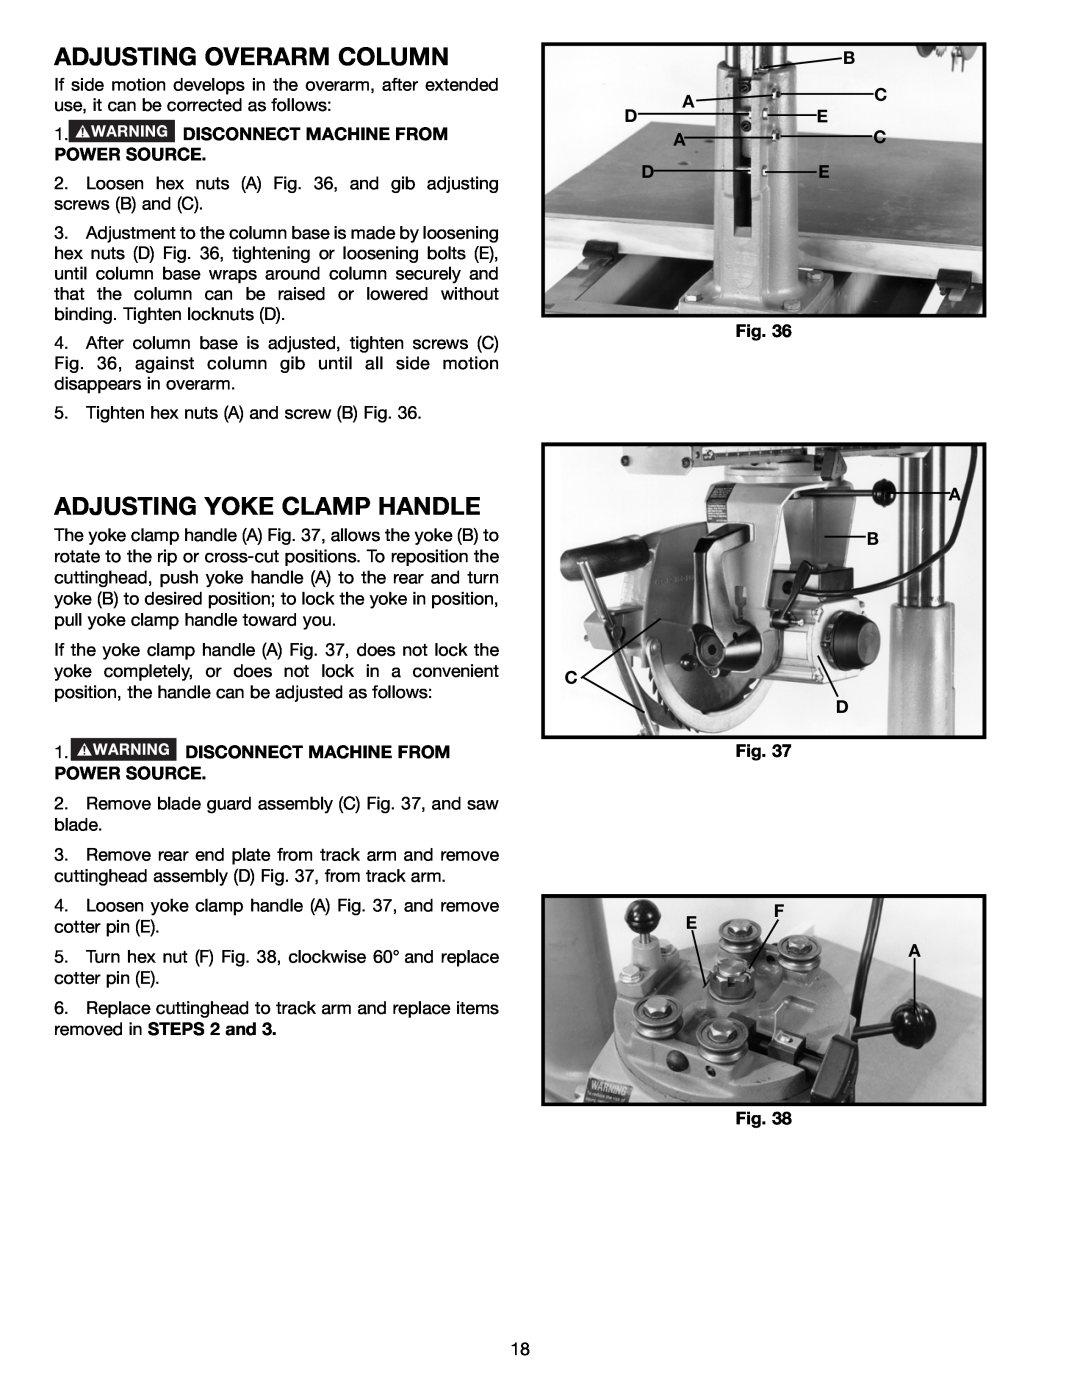 Porter-Cable 33-891, 33-892, 33-890, 33-895X Adjusting Overarm Column, Adjusting Yoke Clamp Handle, B Ac De Ac De, A B C D 